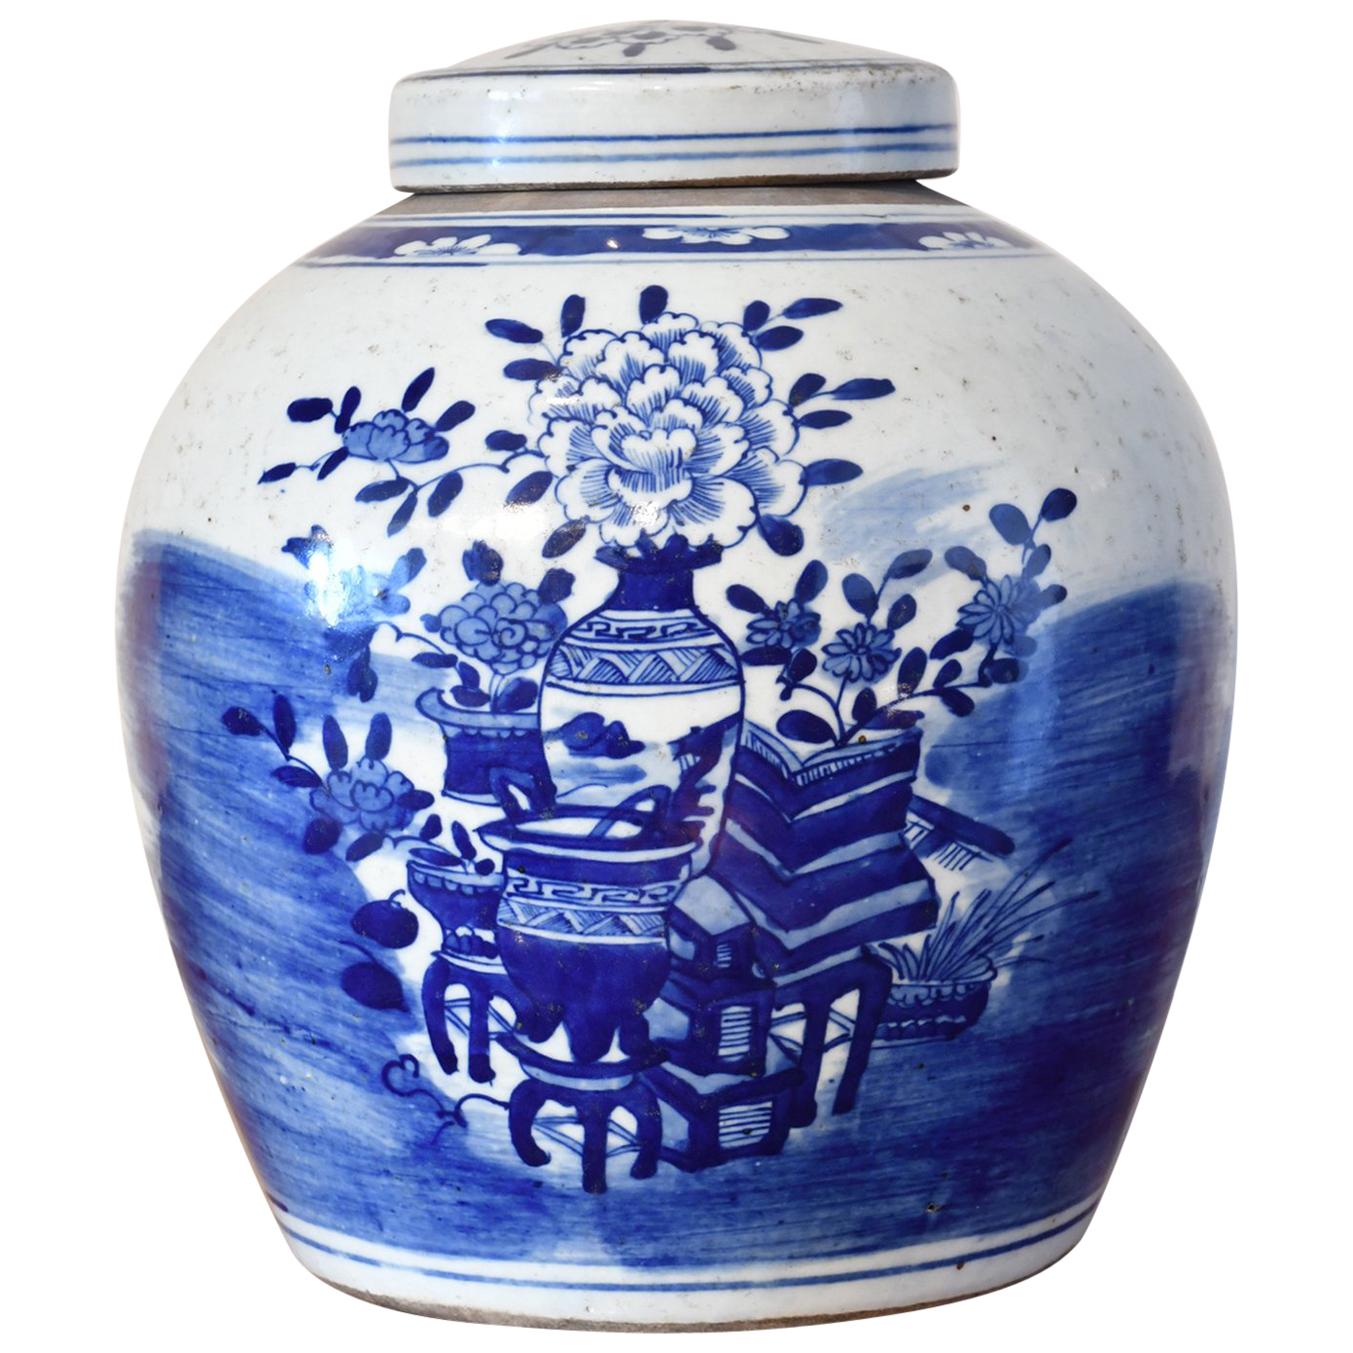 Kangxi-Porzellangefäß aus blauem und weißem chinesischem Kangxi-Porzellan mit Hundert Schätzen-Motiv, um 1750